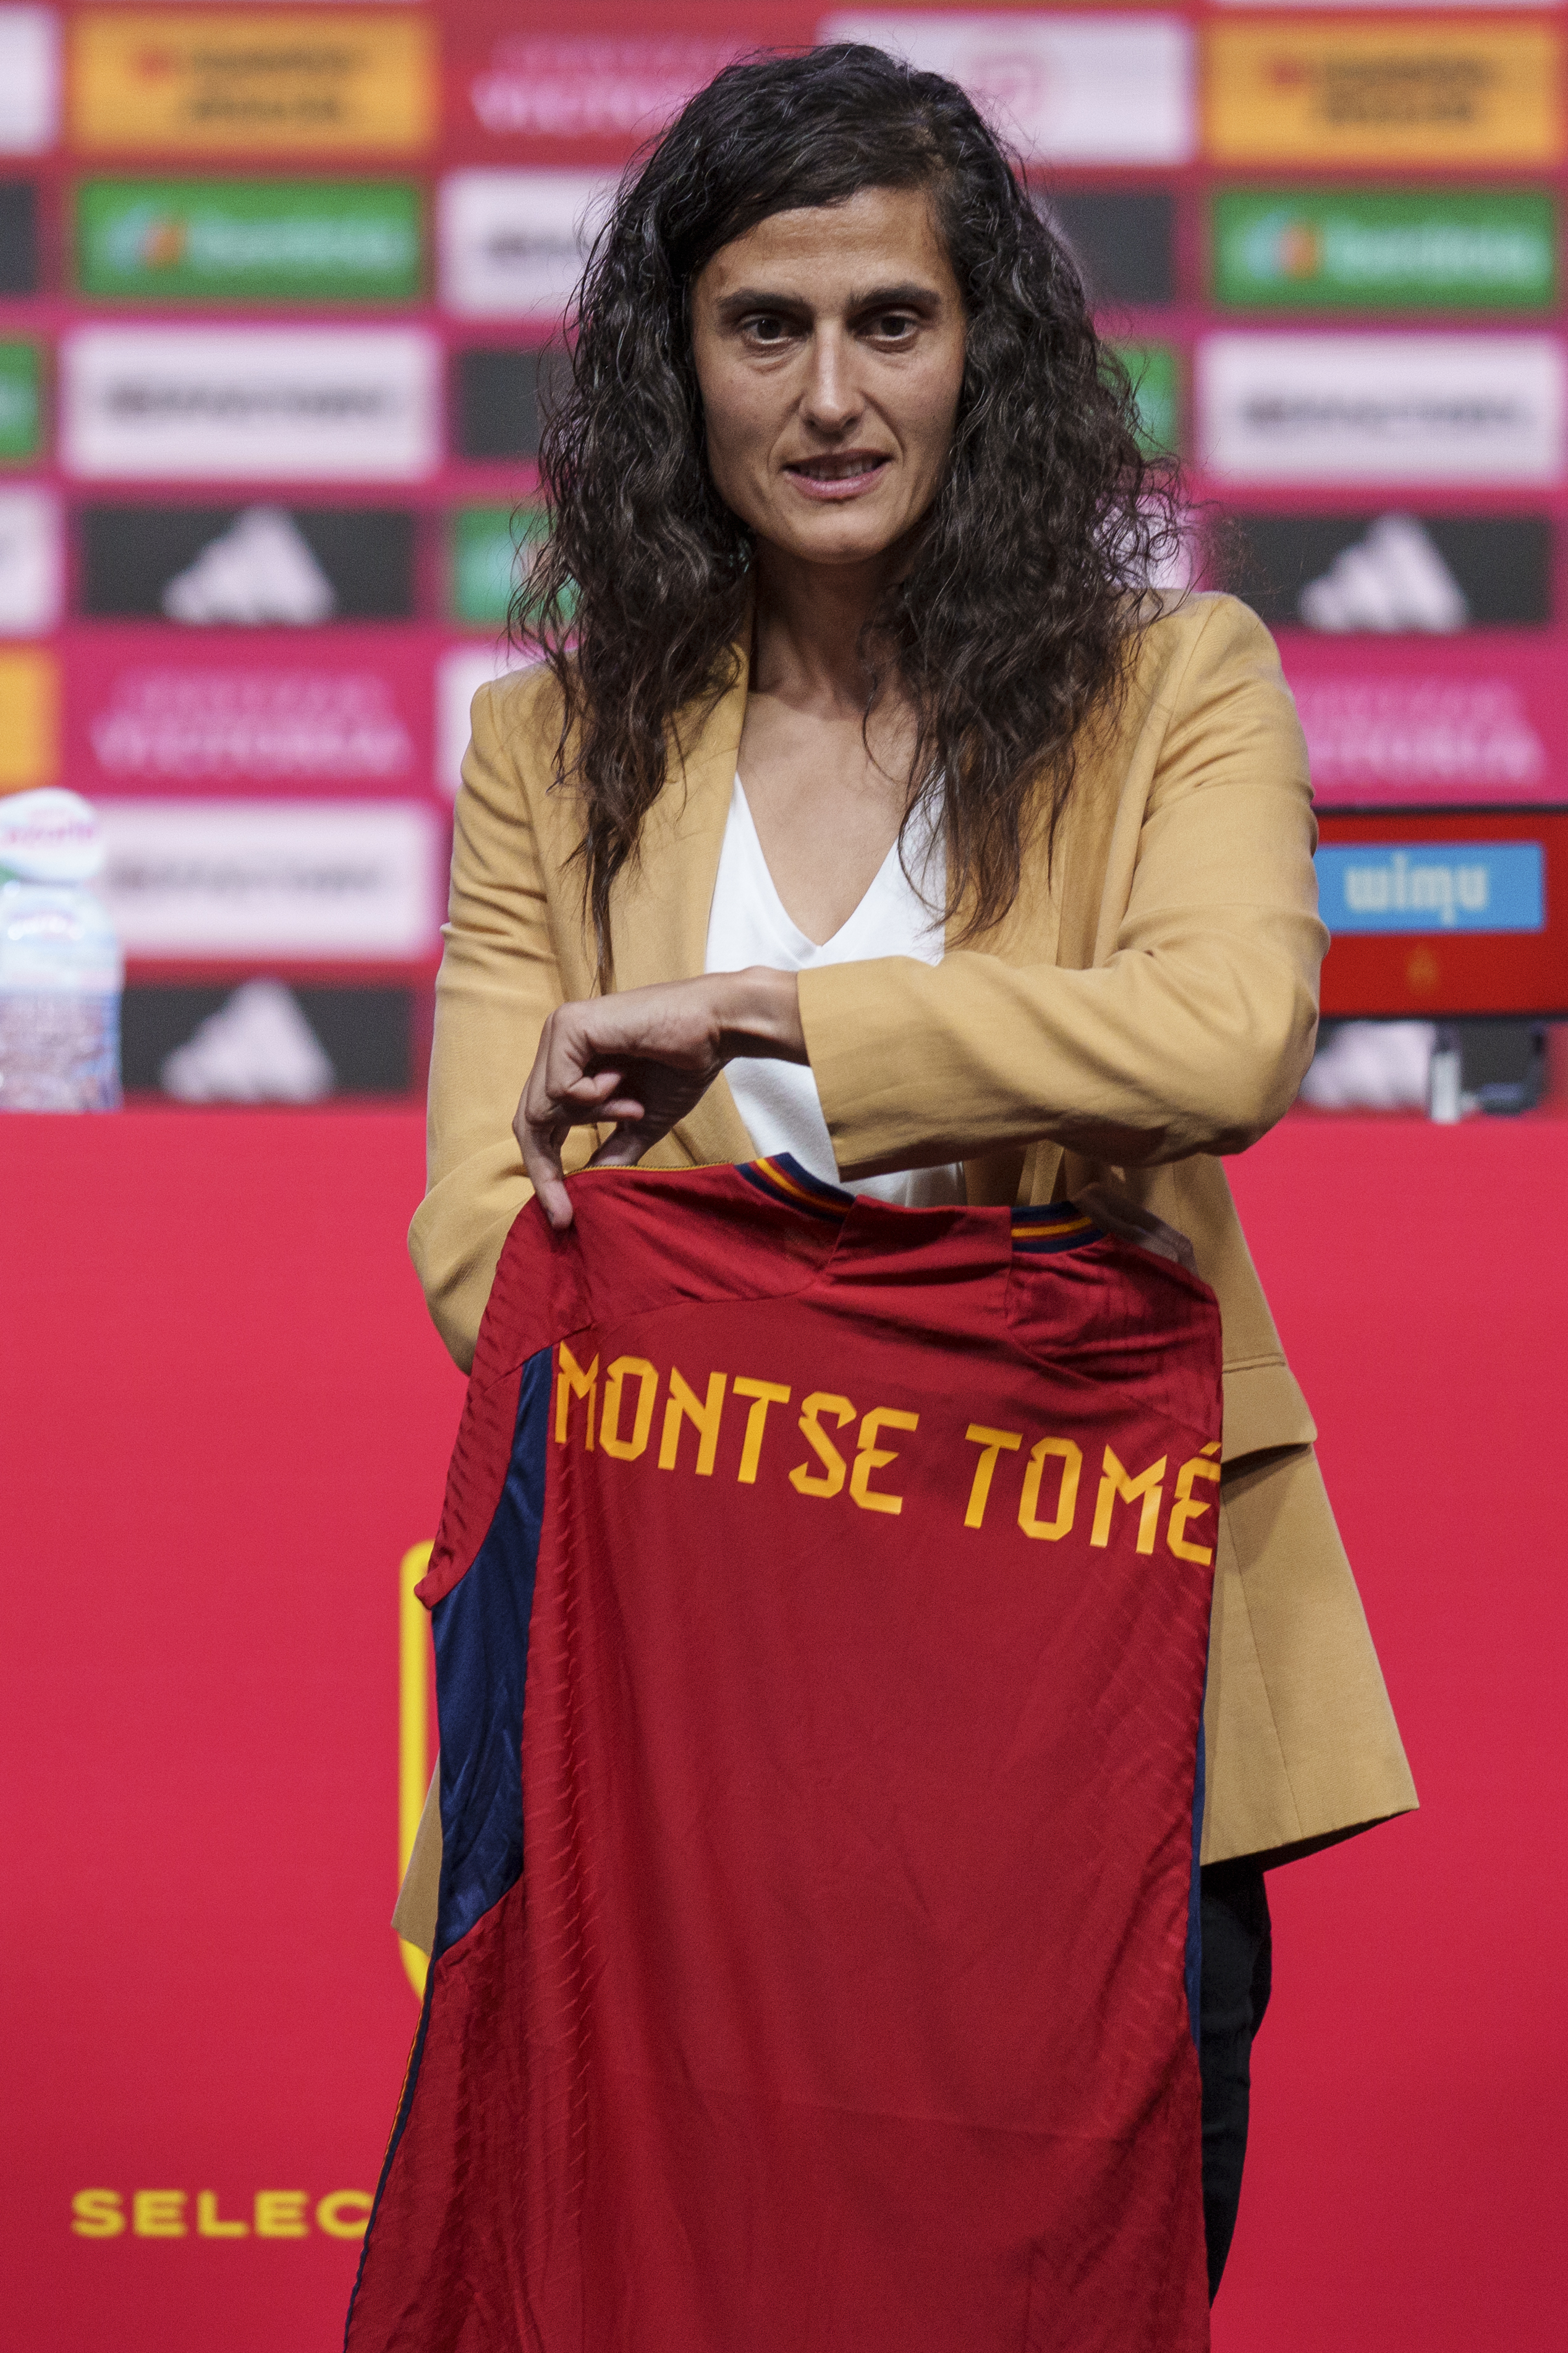 La nueva seleccionadora española Montse Tomé